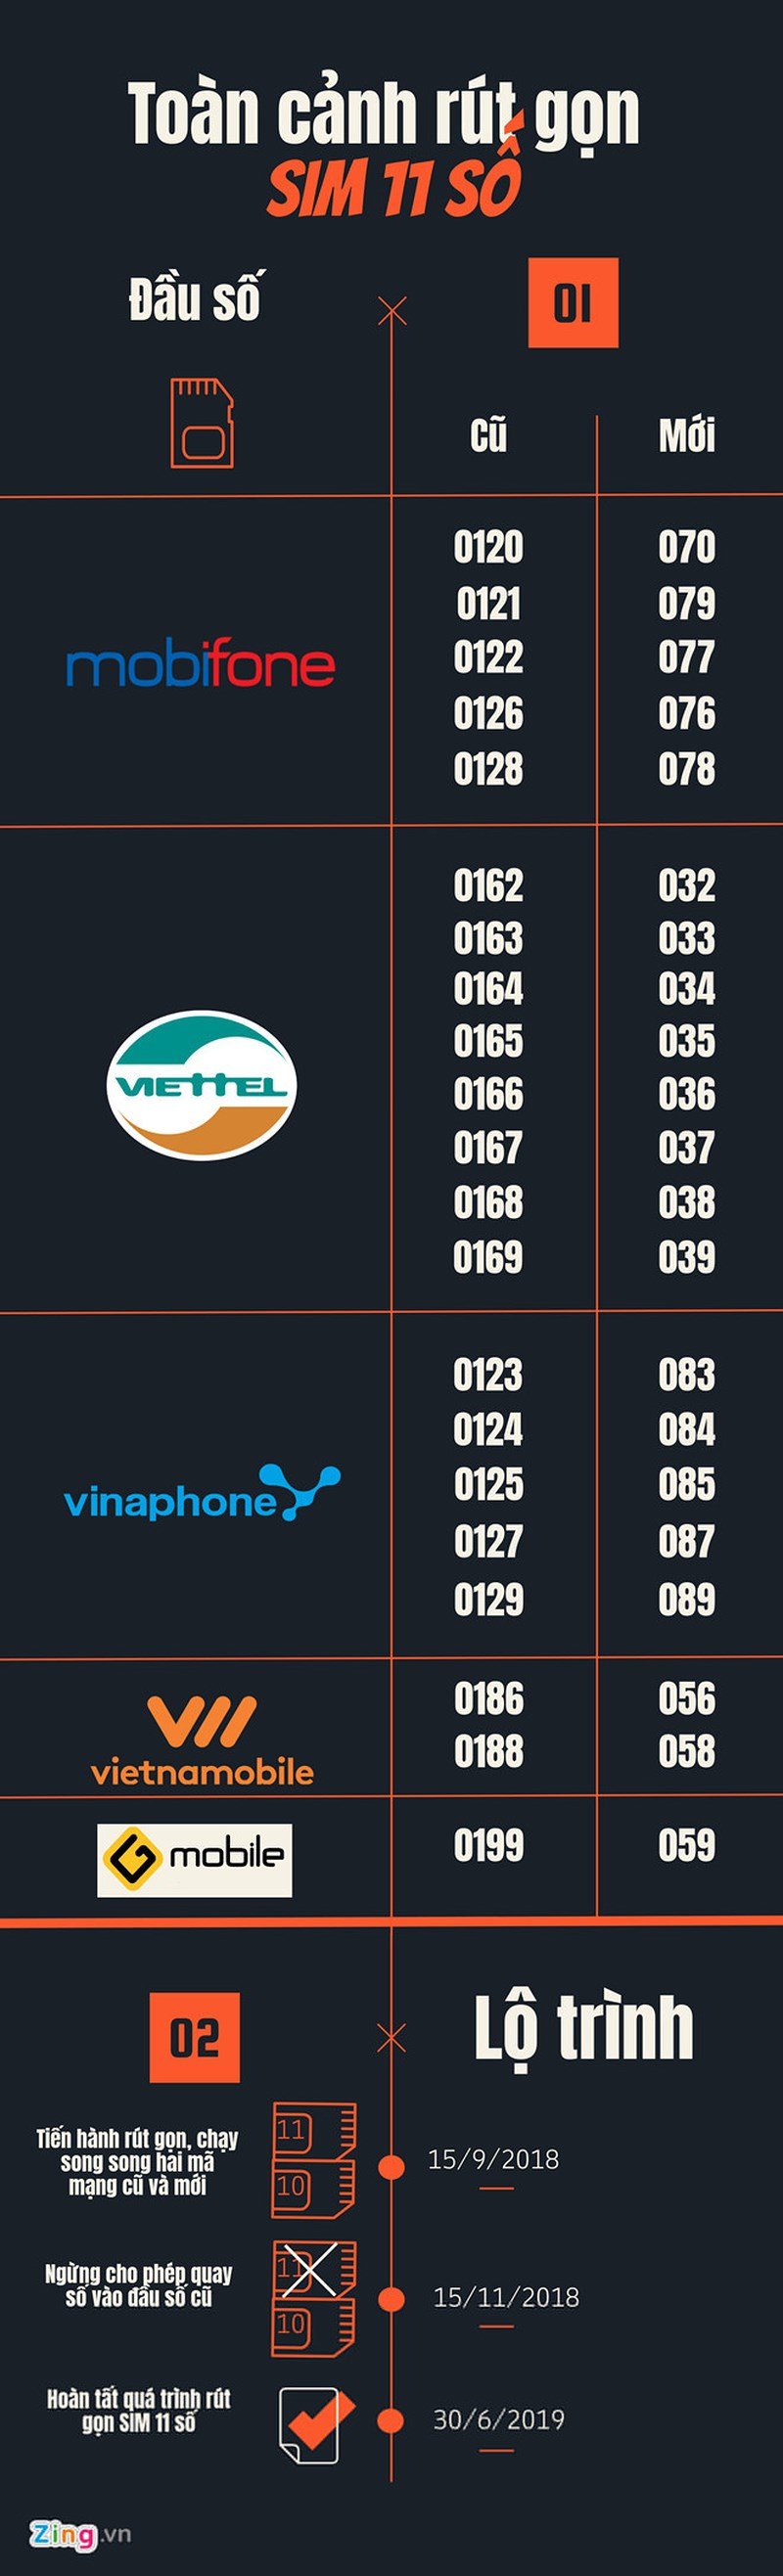 Các thuê bao 11 số của Viettel sẽ được rút về đầu số 03X, trong khi với các thuê bao VinaPhone là đầu 08X, MobiFone là đầu 07X, hai nhà mạng nhỏ Vietnamobile và Gmobile là đầu 05X. Nguồn: Zing.vn